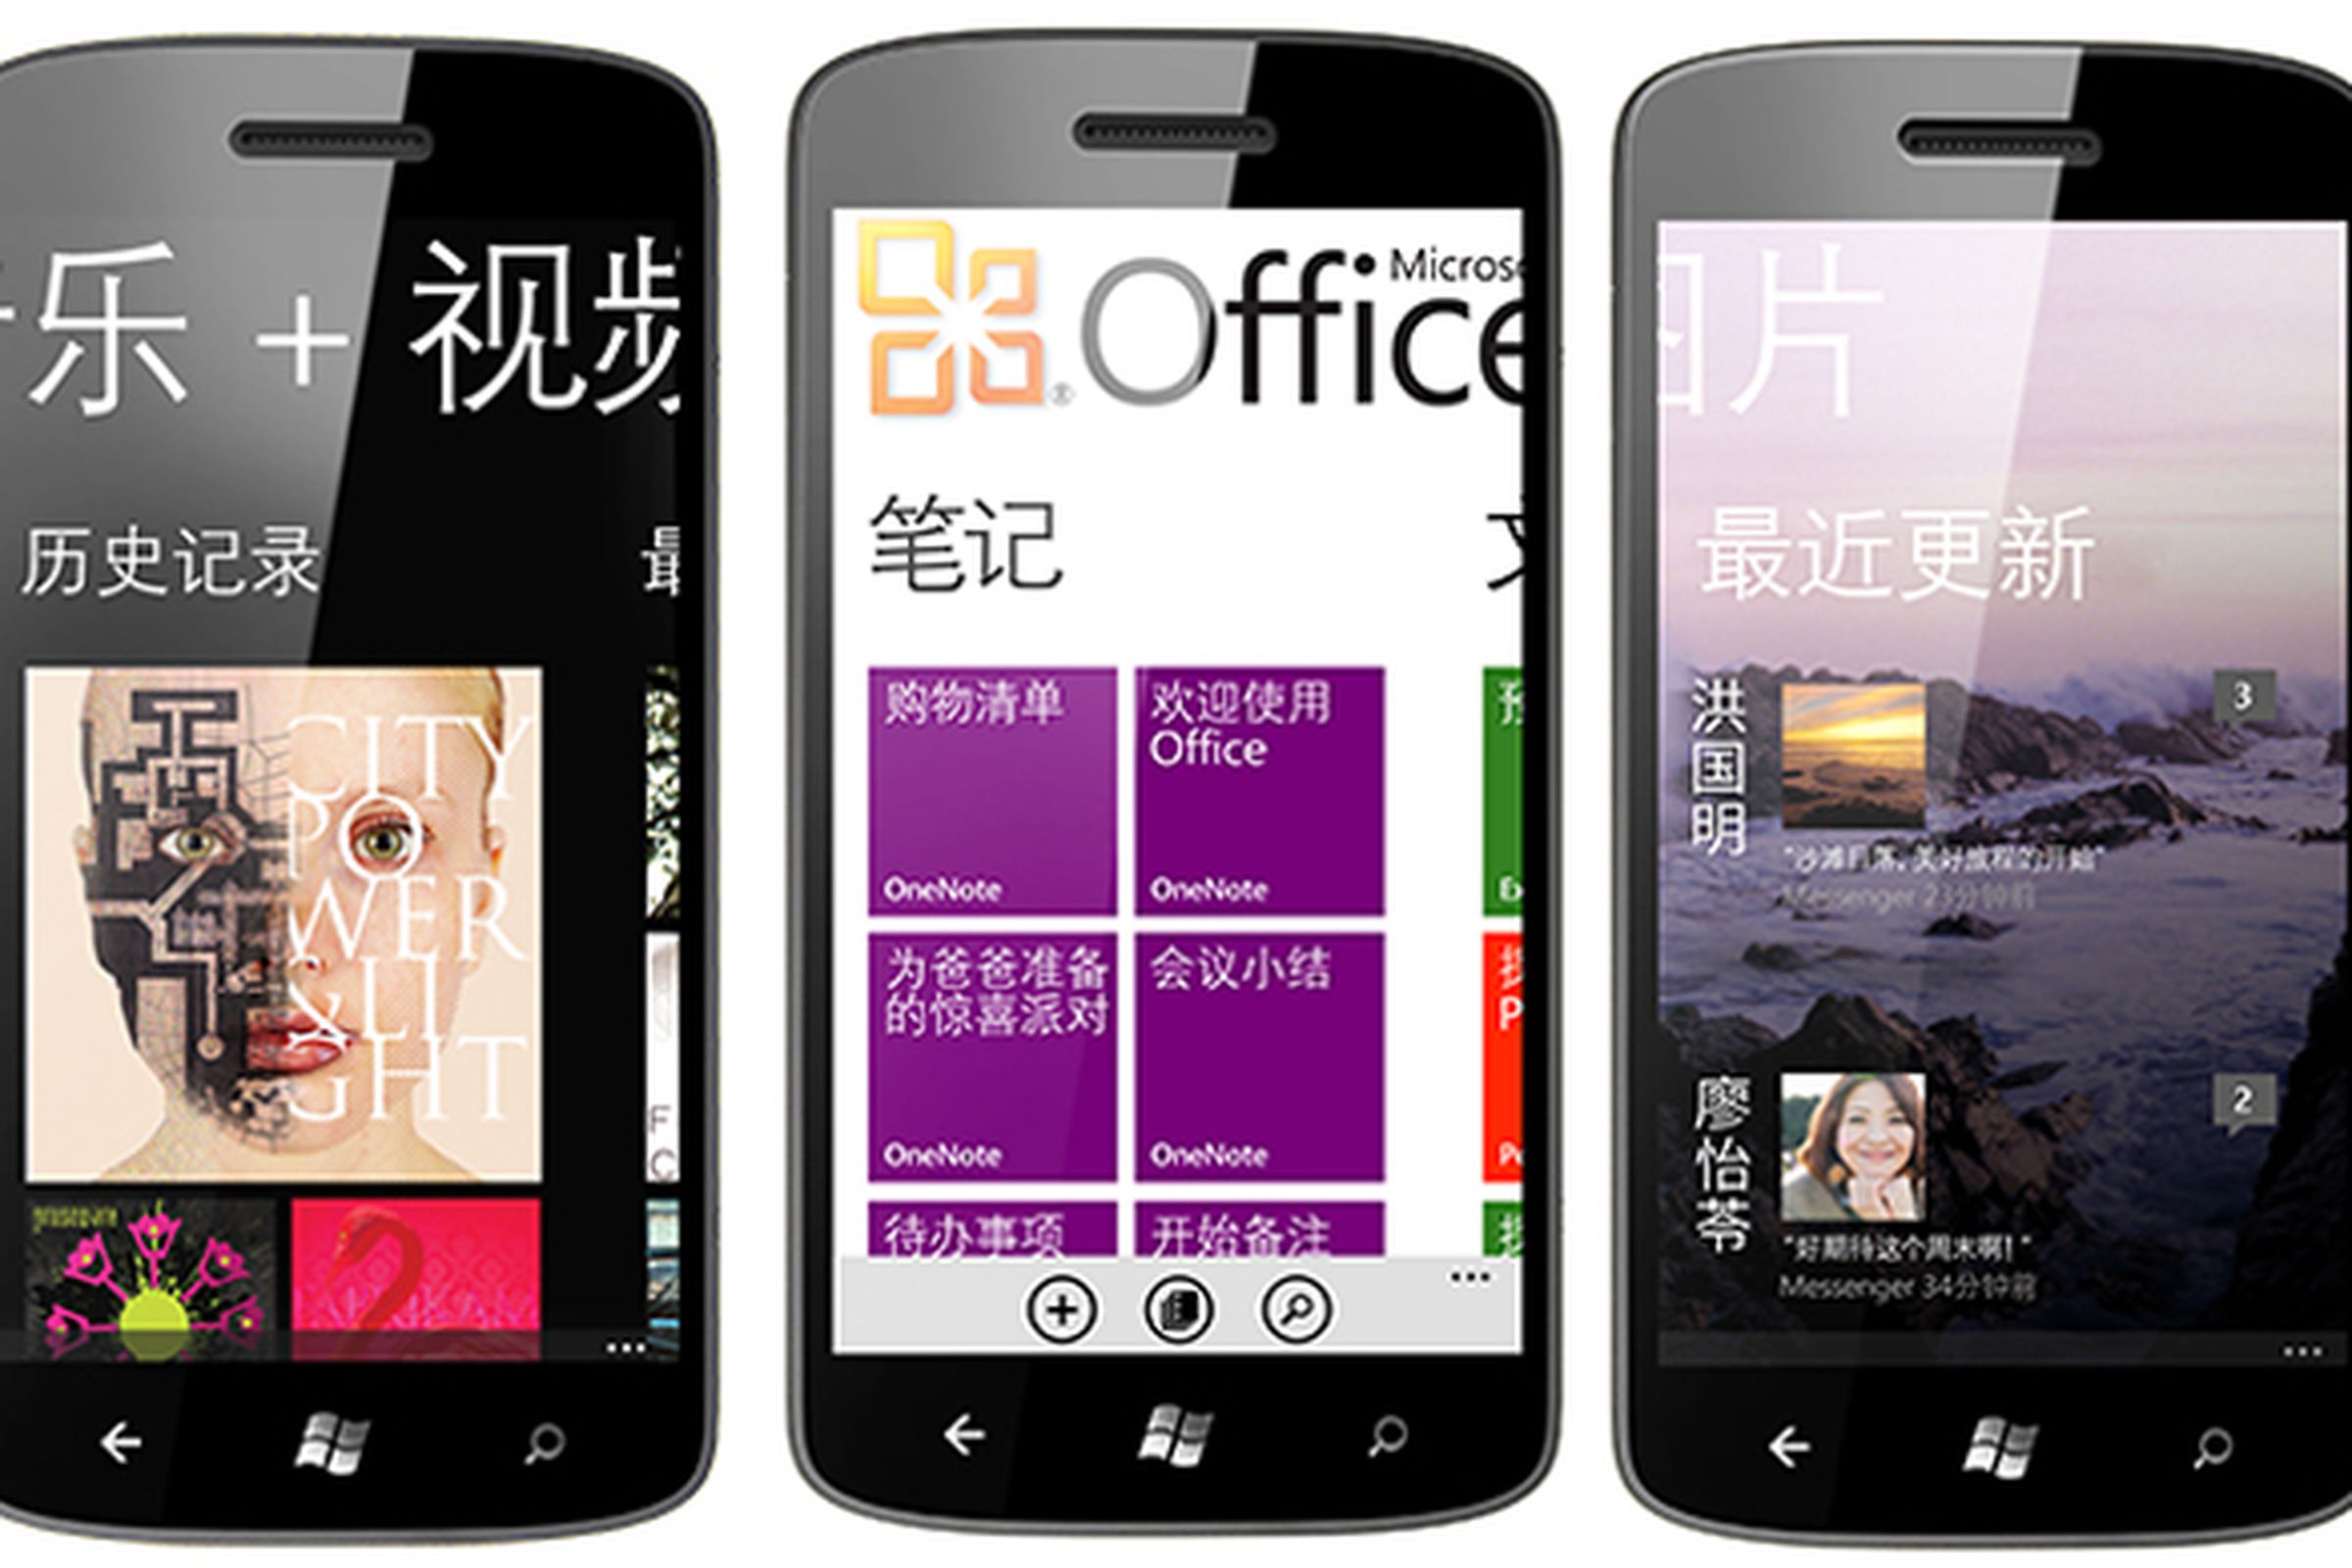 Windows Phone China